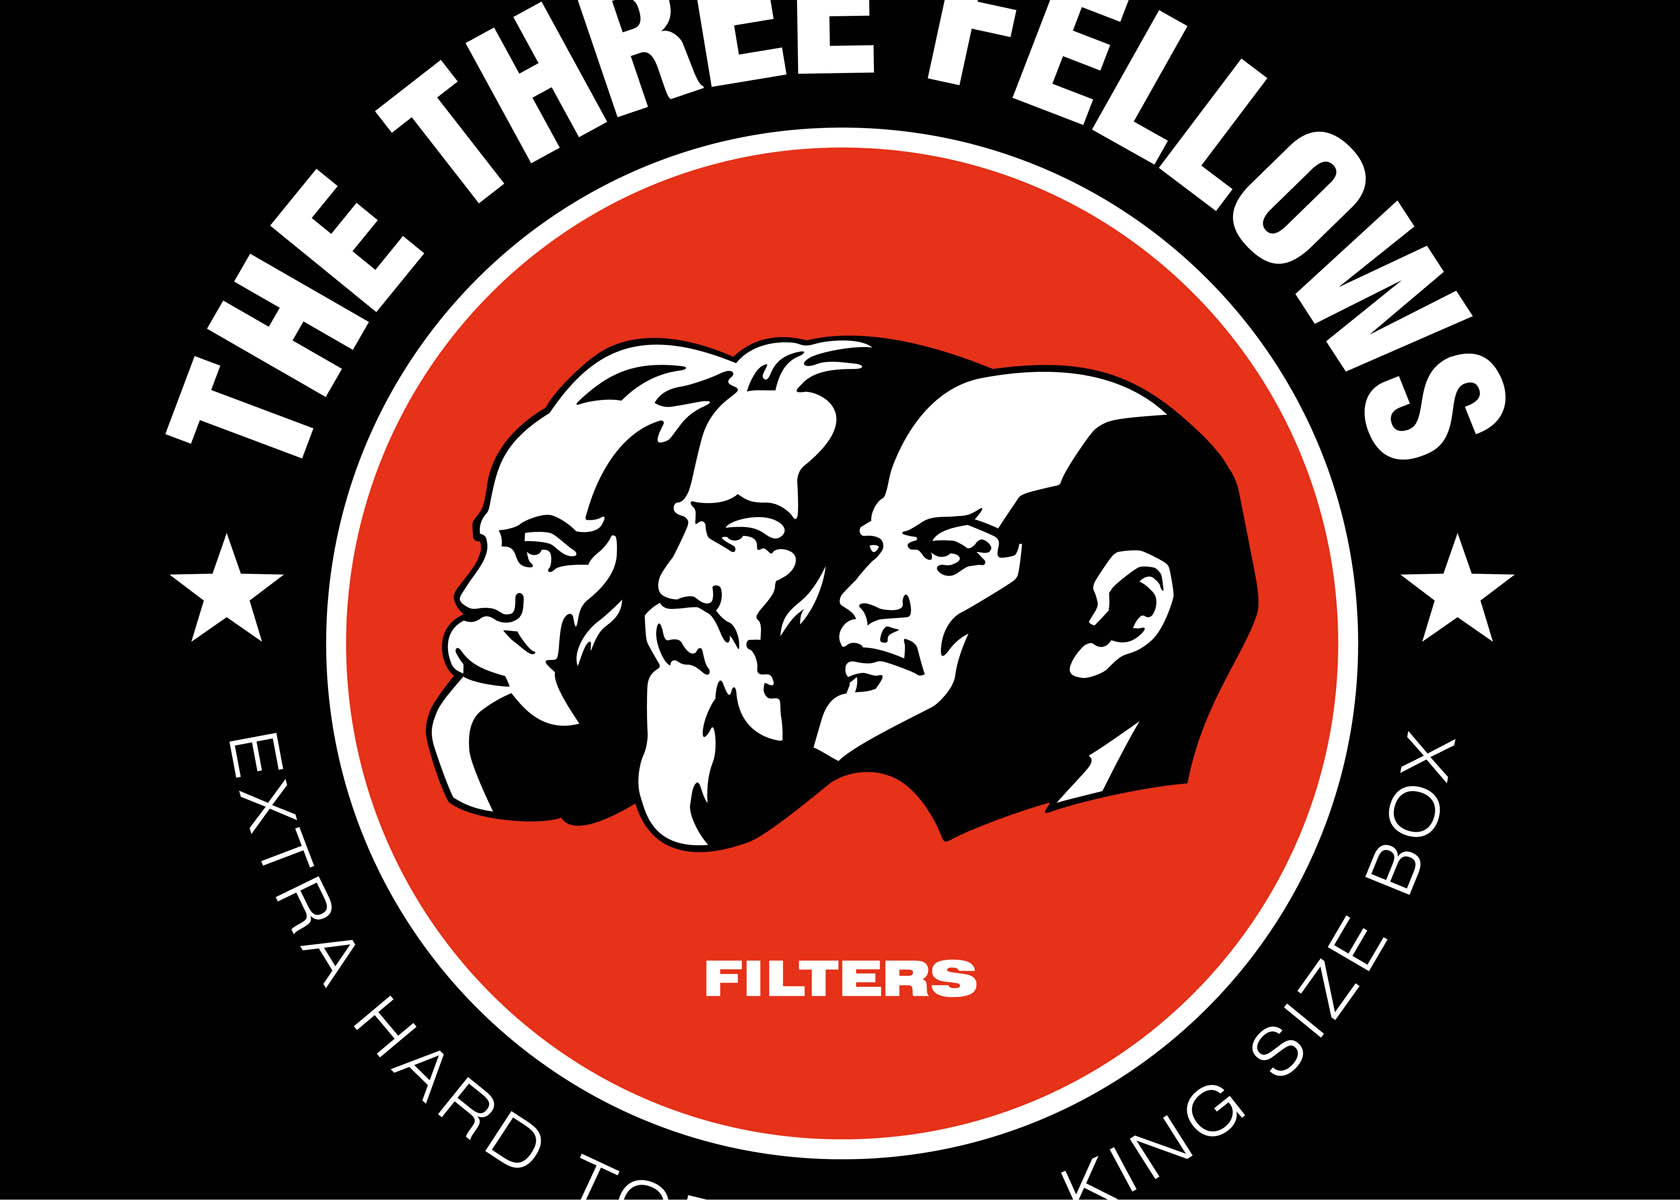 The Three Fellows